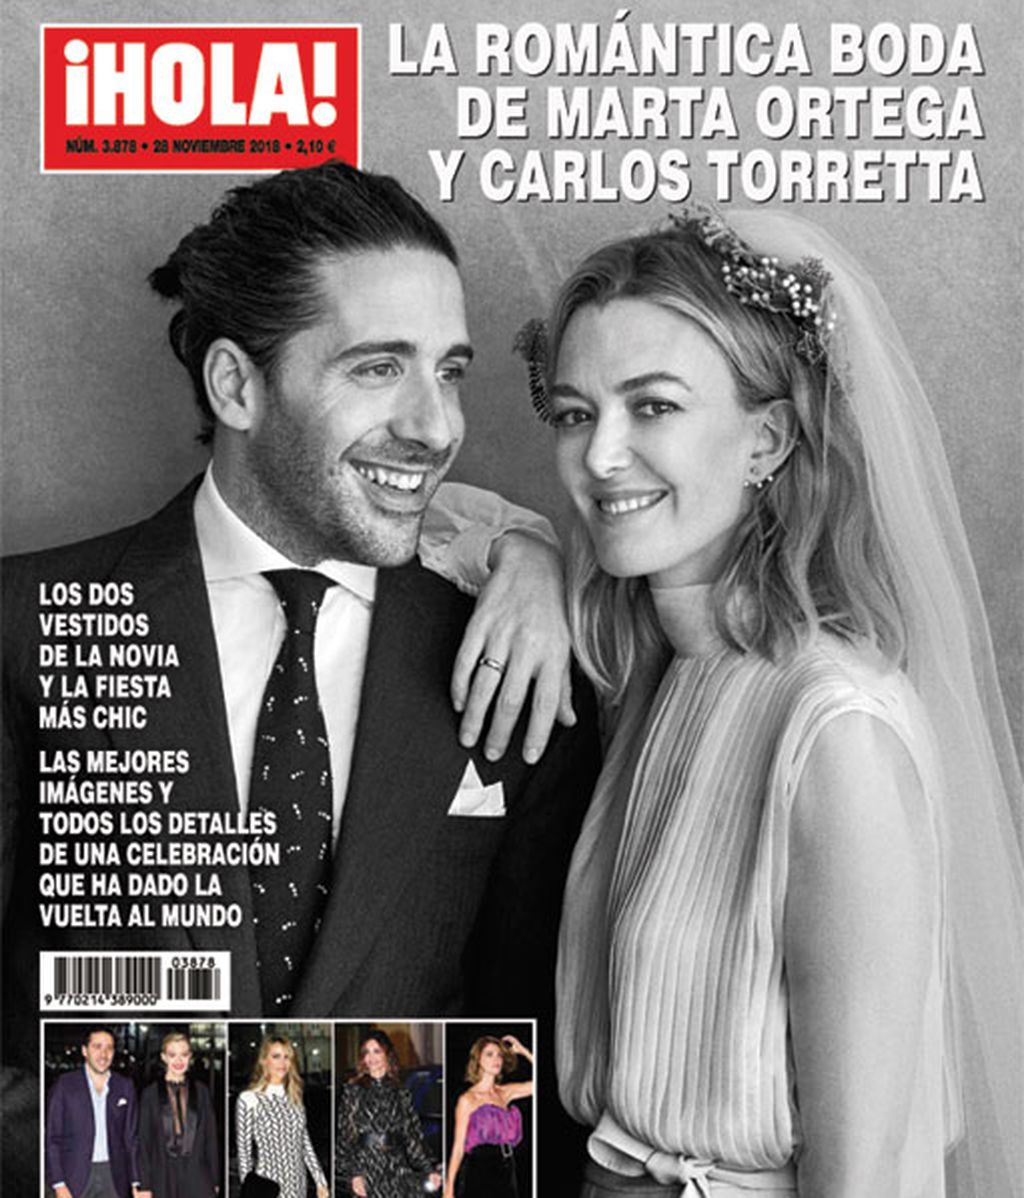 La boda de Marta Ortega y Carlos Torretta